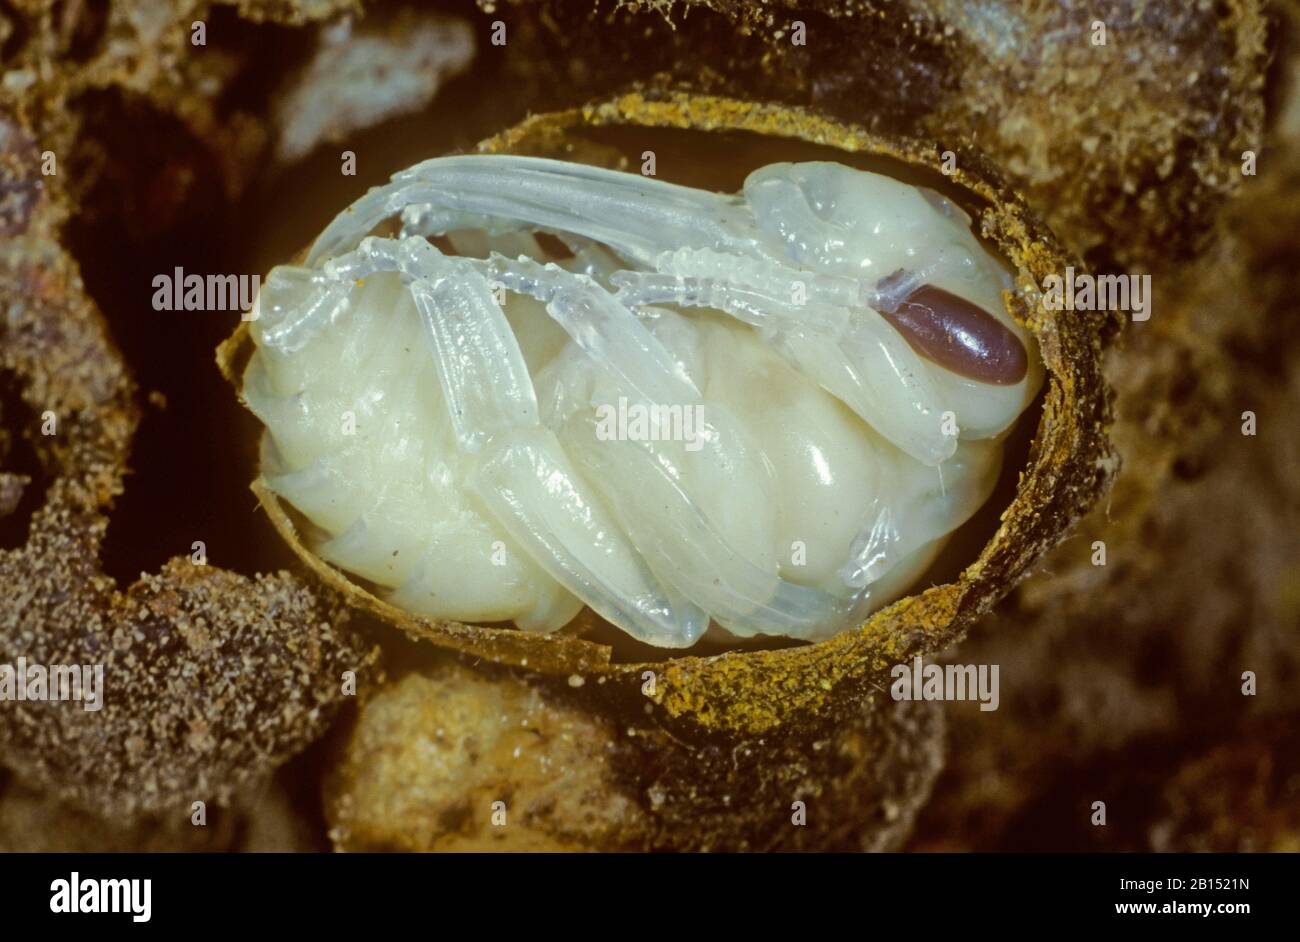 Rotschwanz Biene (Bombus lapidarius, Pyrobombus lapidarius, Aombus lapidarius), junge Hummeln brüten aus einem Kokon, nisten, Deutschland Stockfoto